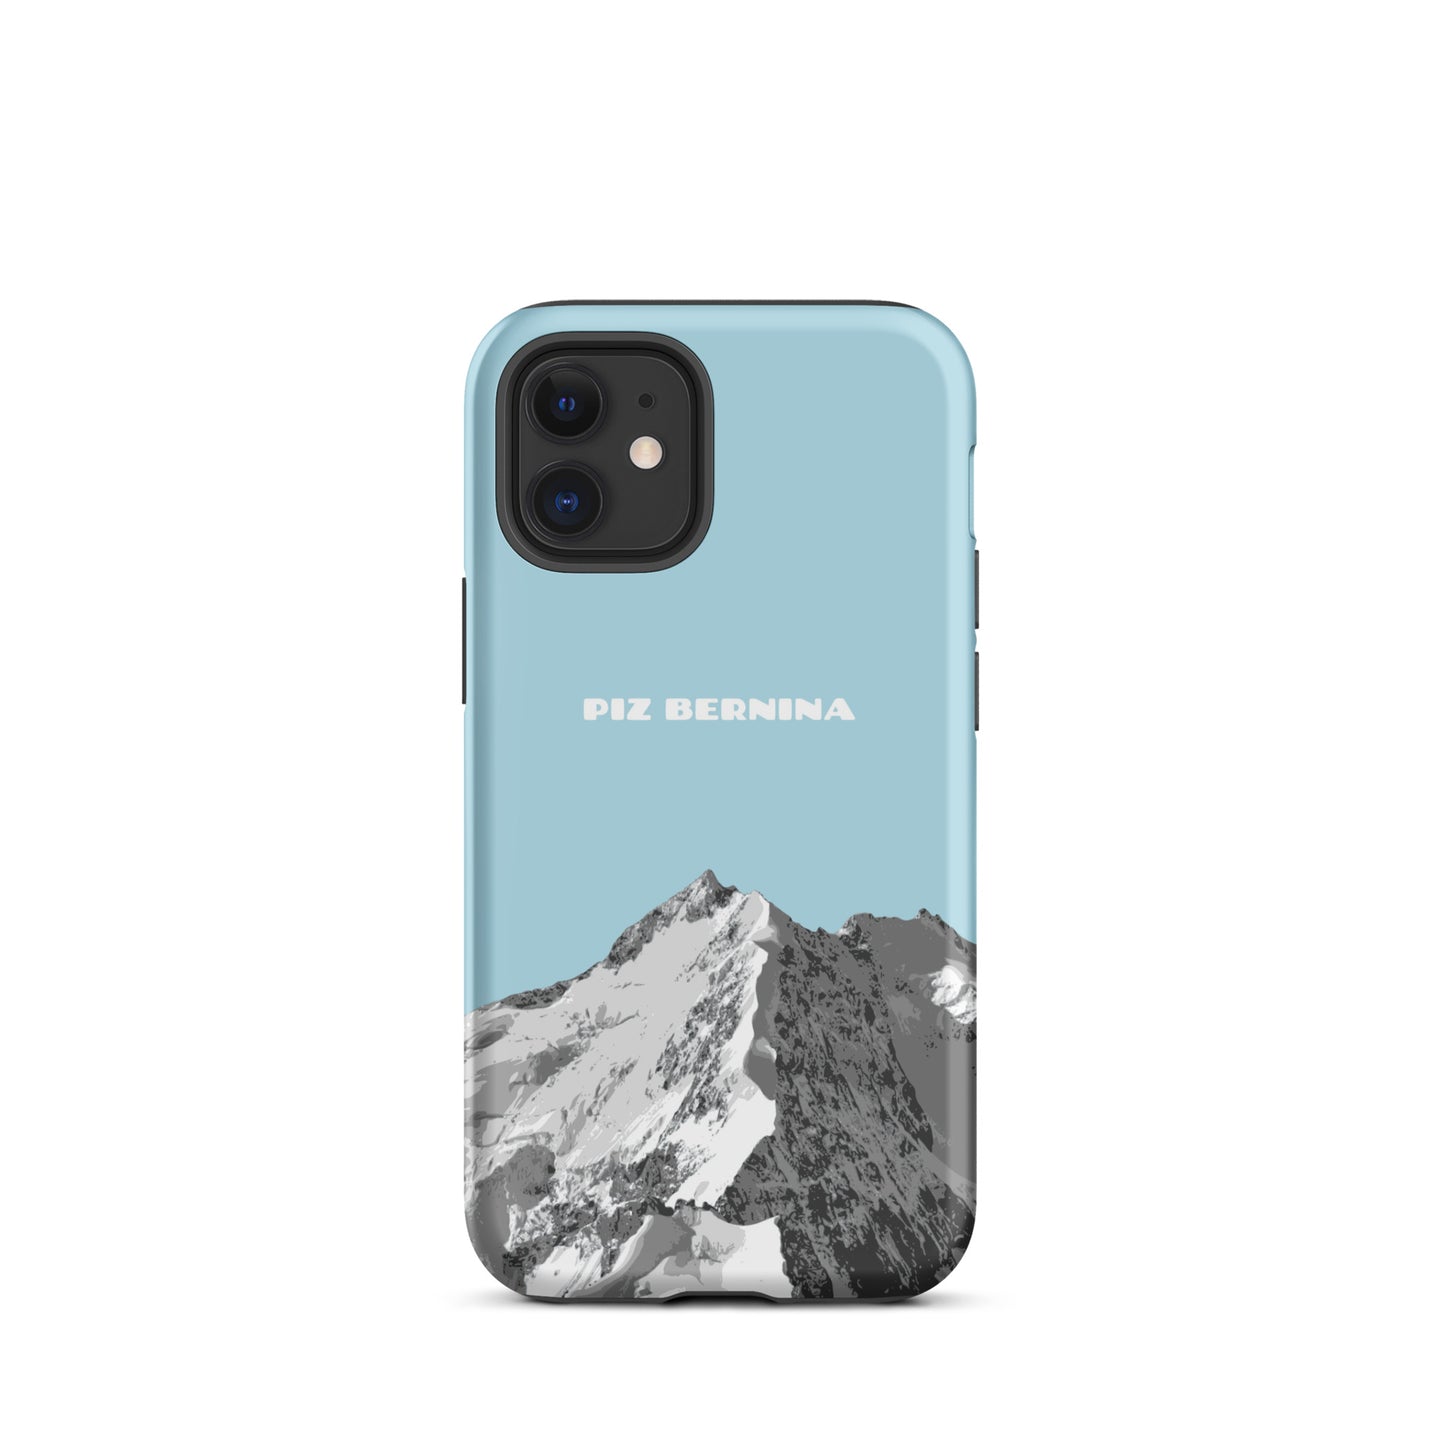 Hülle für das iPhone 12 Mini von Apple in der Farbe Hellblau, dass den Piz Bernina in Graubünden zeigt.